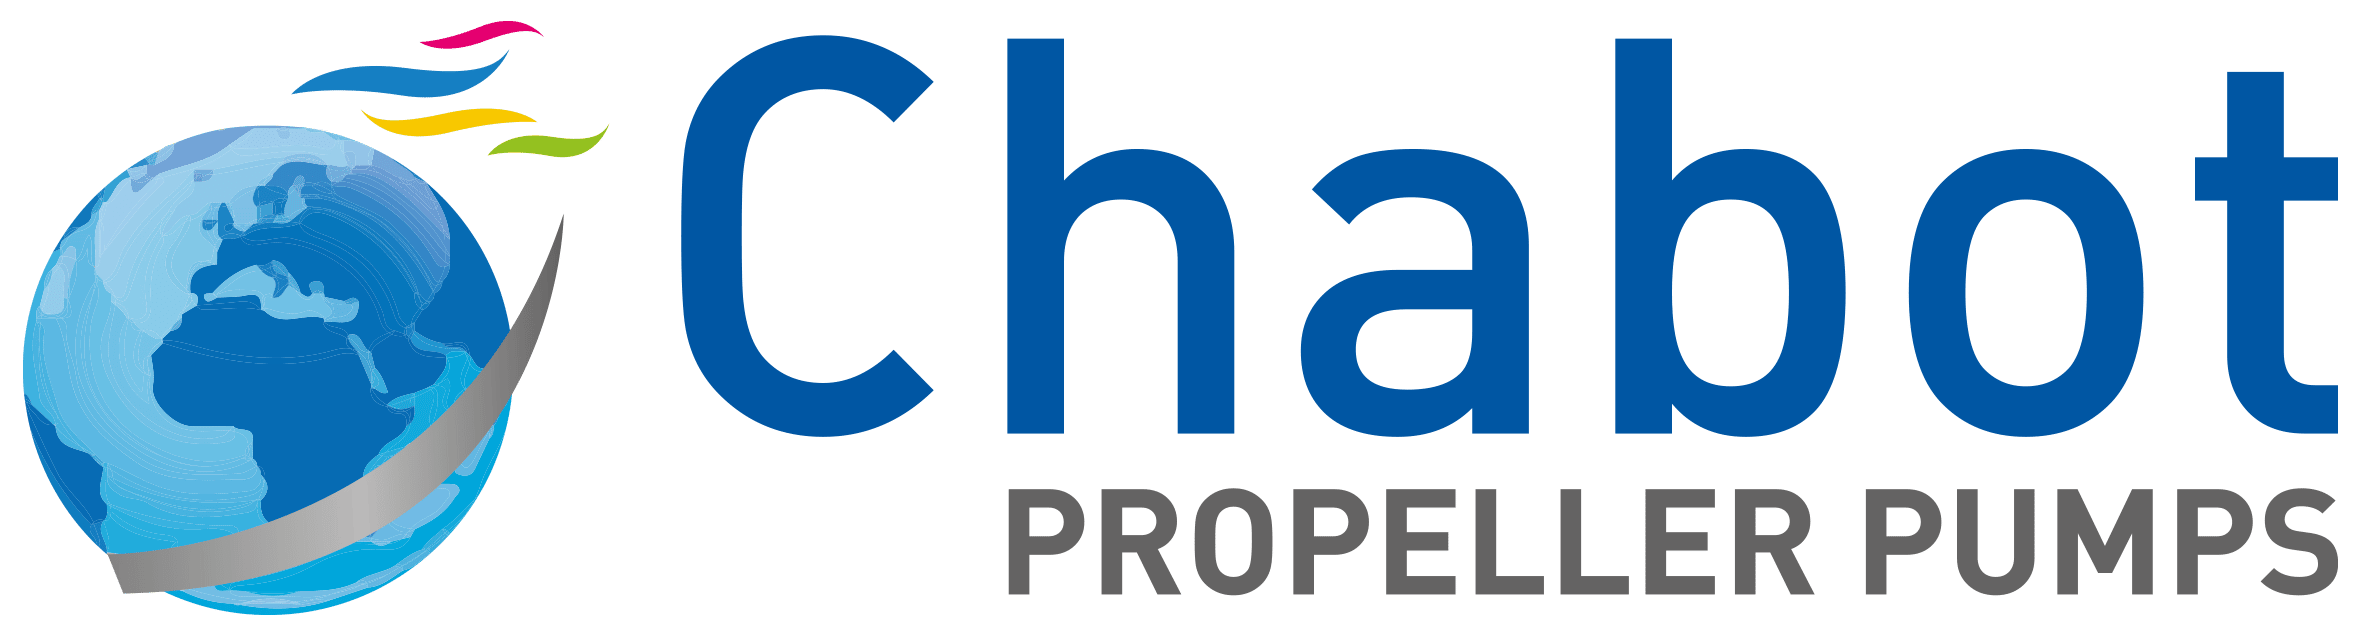 Logo Chabot